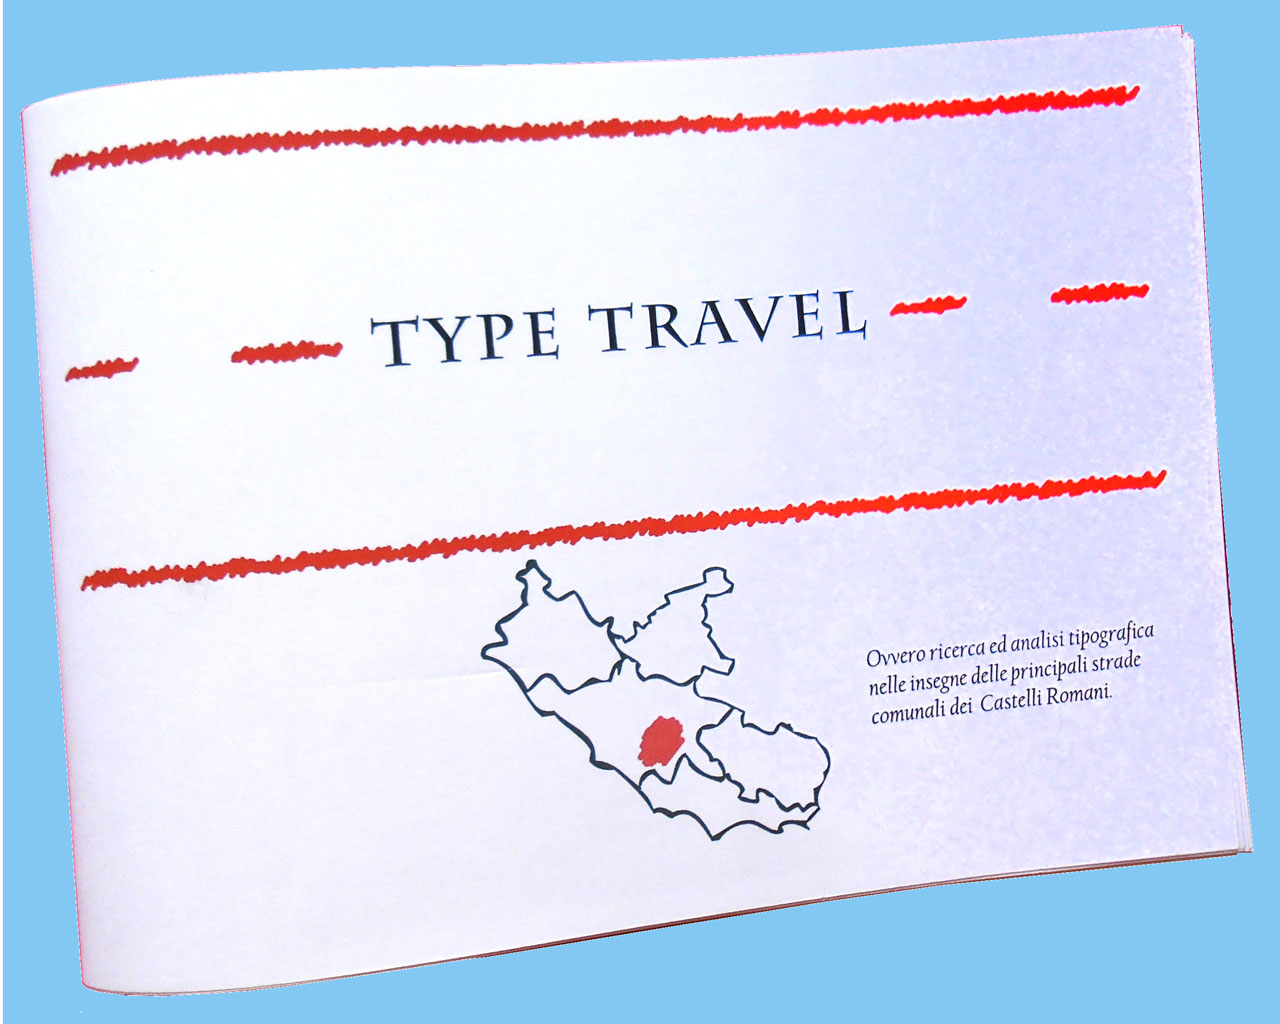 Type Travel